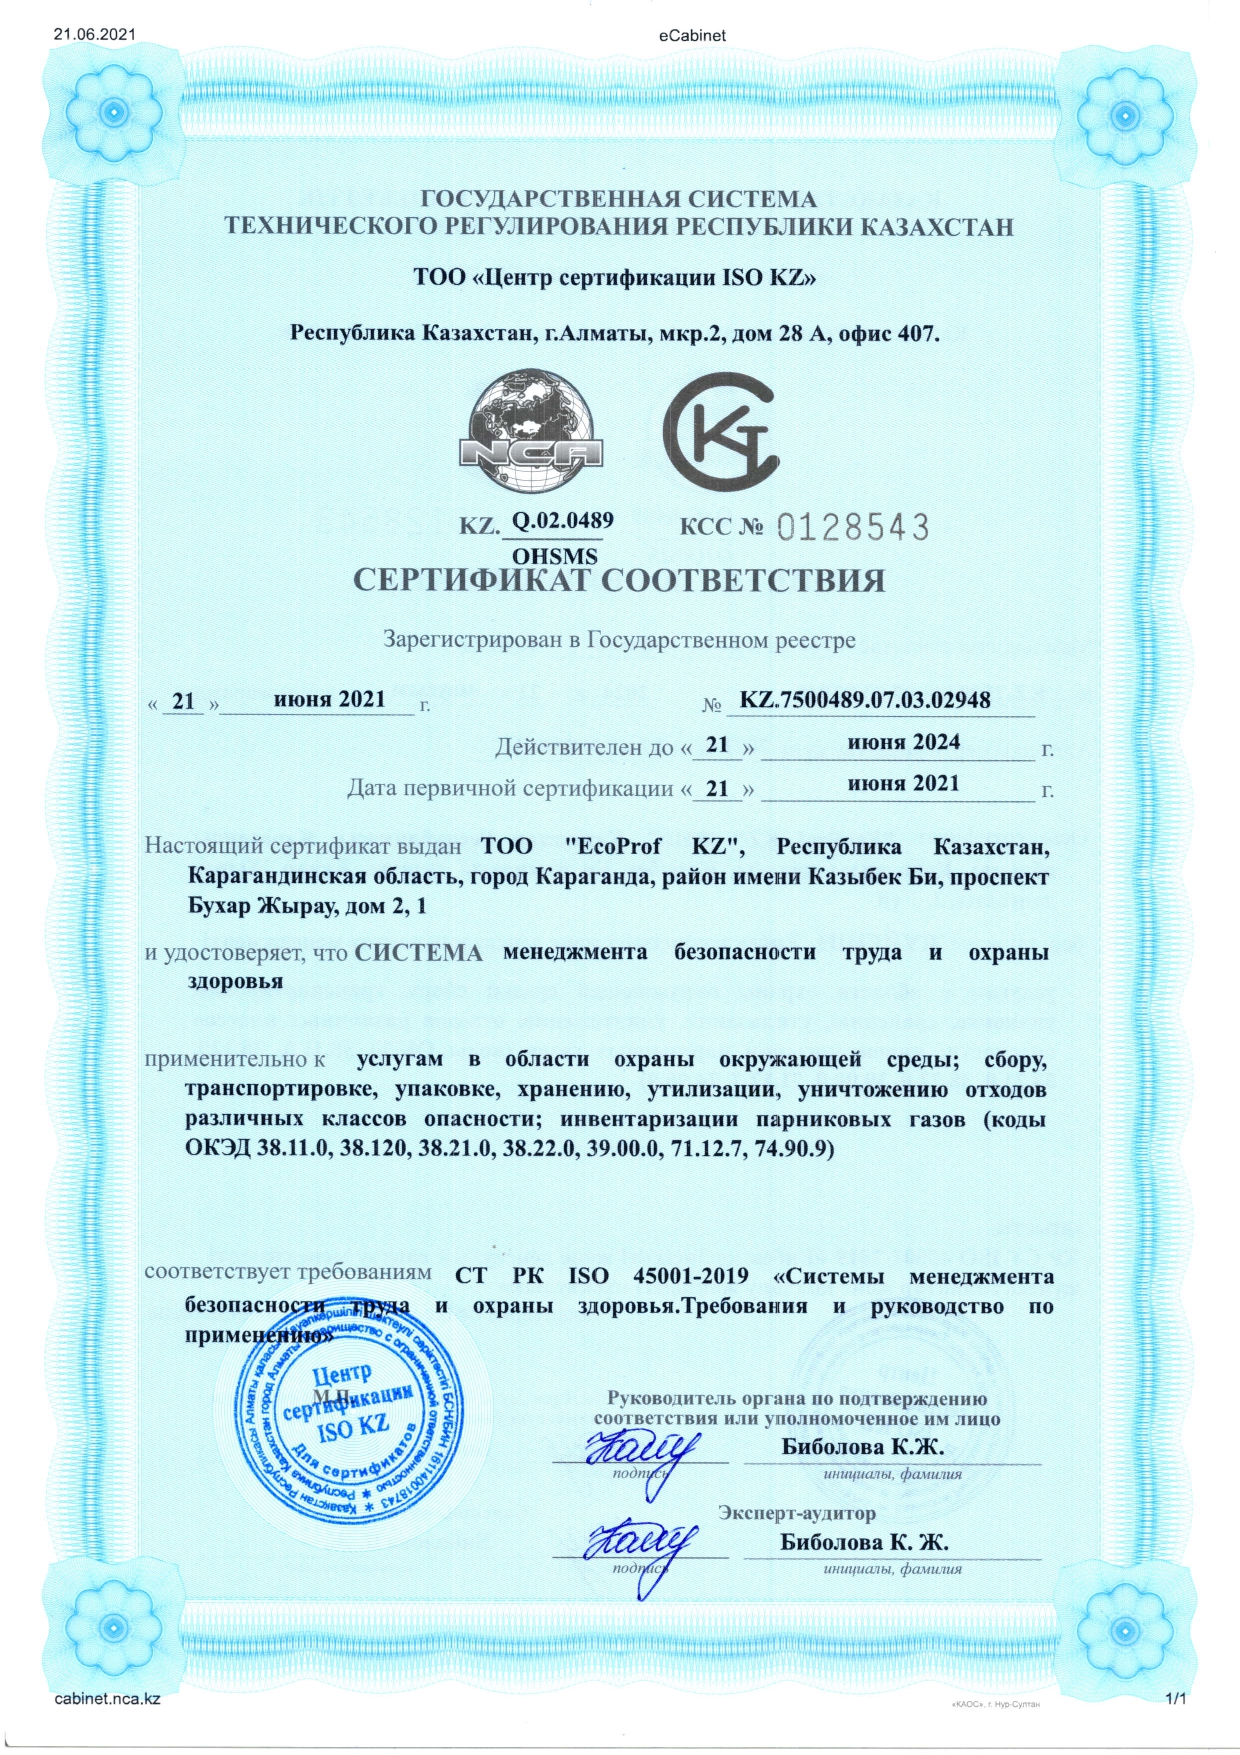 Сертификат соответствия СТ РК ISO 45001-2019 «Системы менеджмента безопасности труда и охраны здоровья. Требования и руководство по применению»